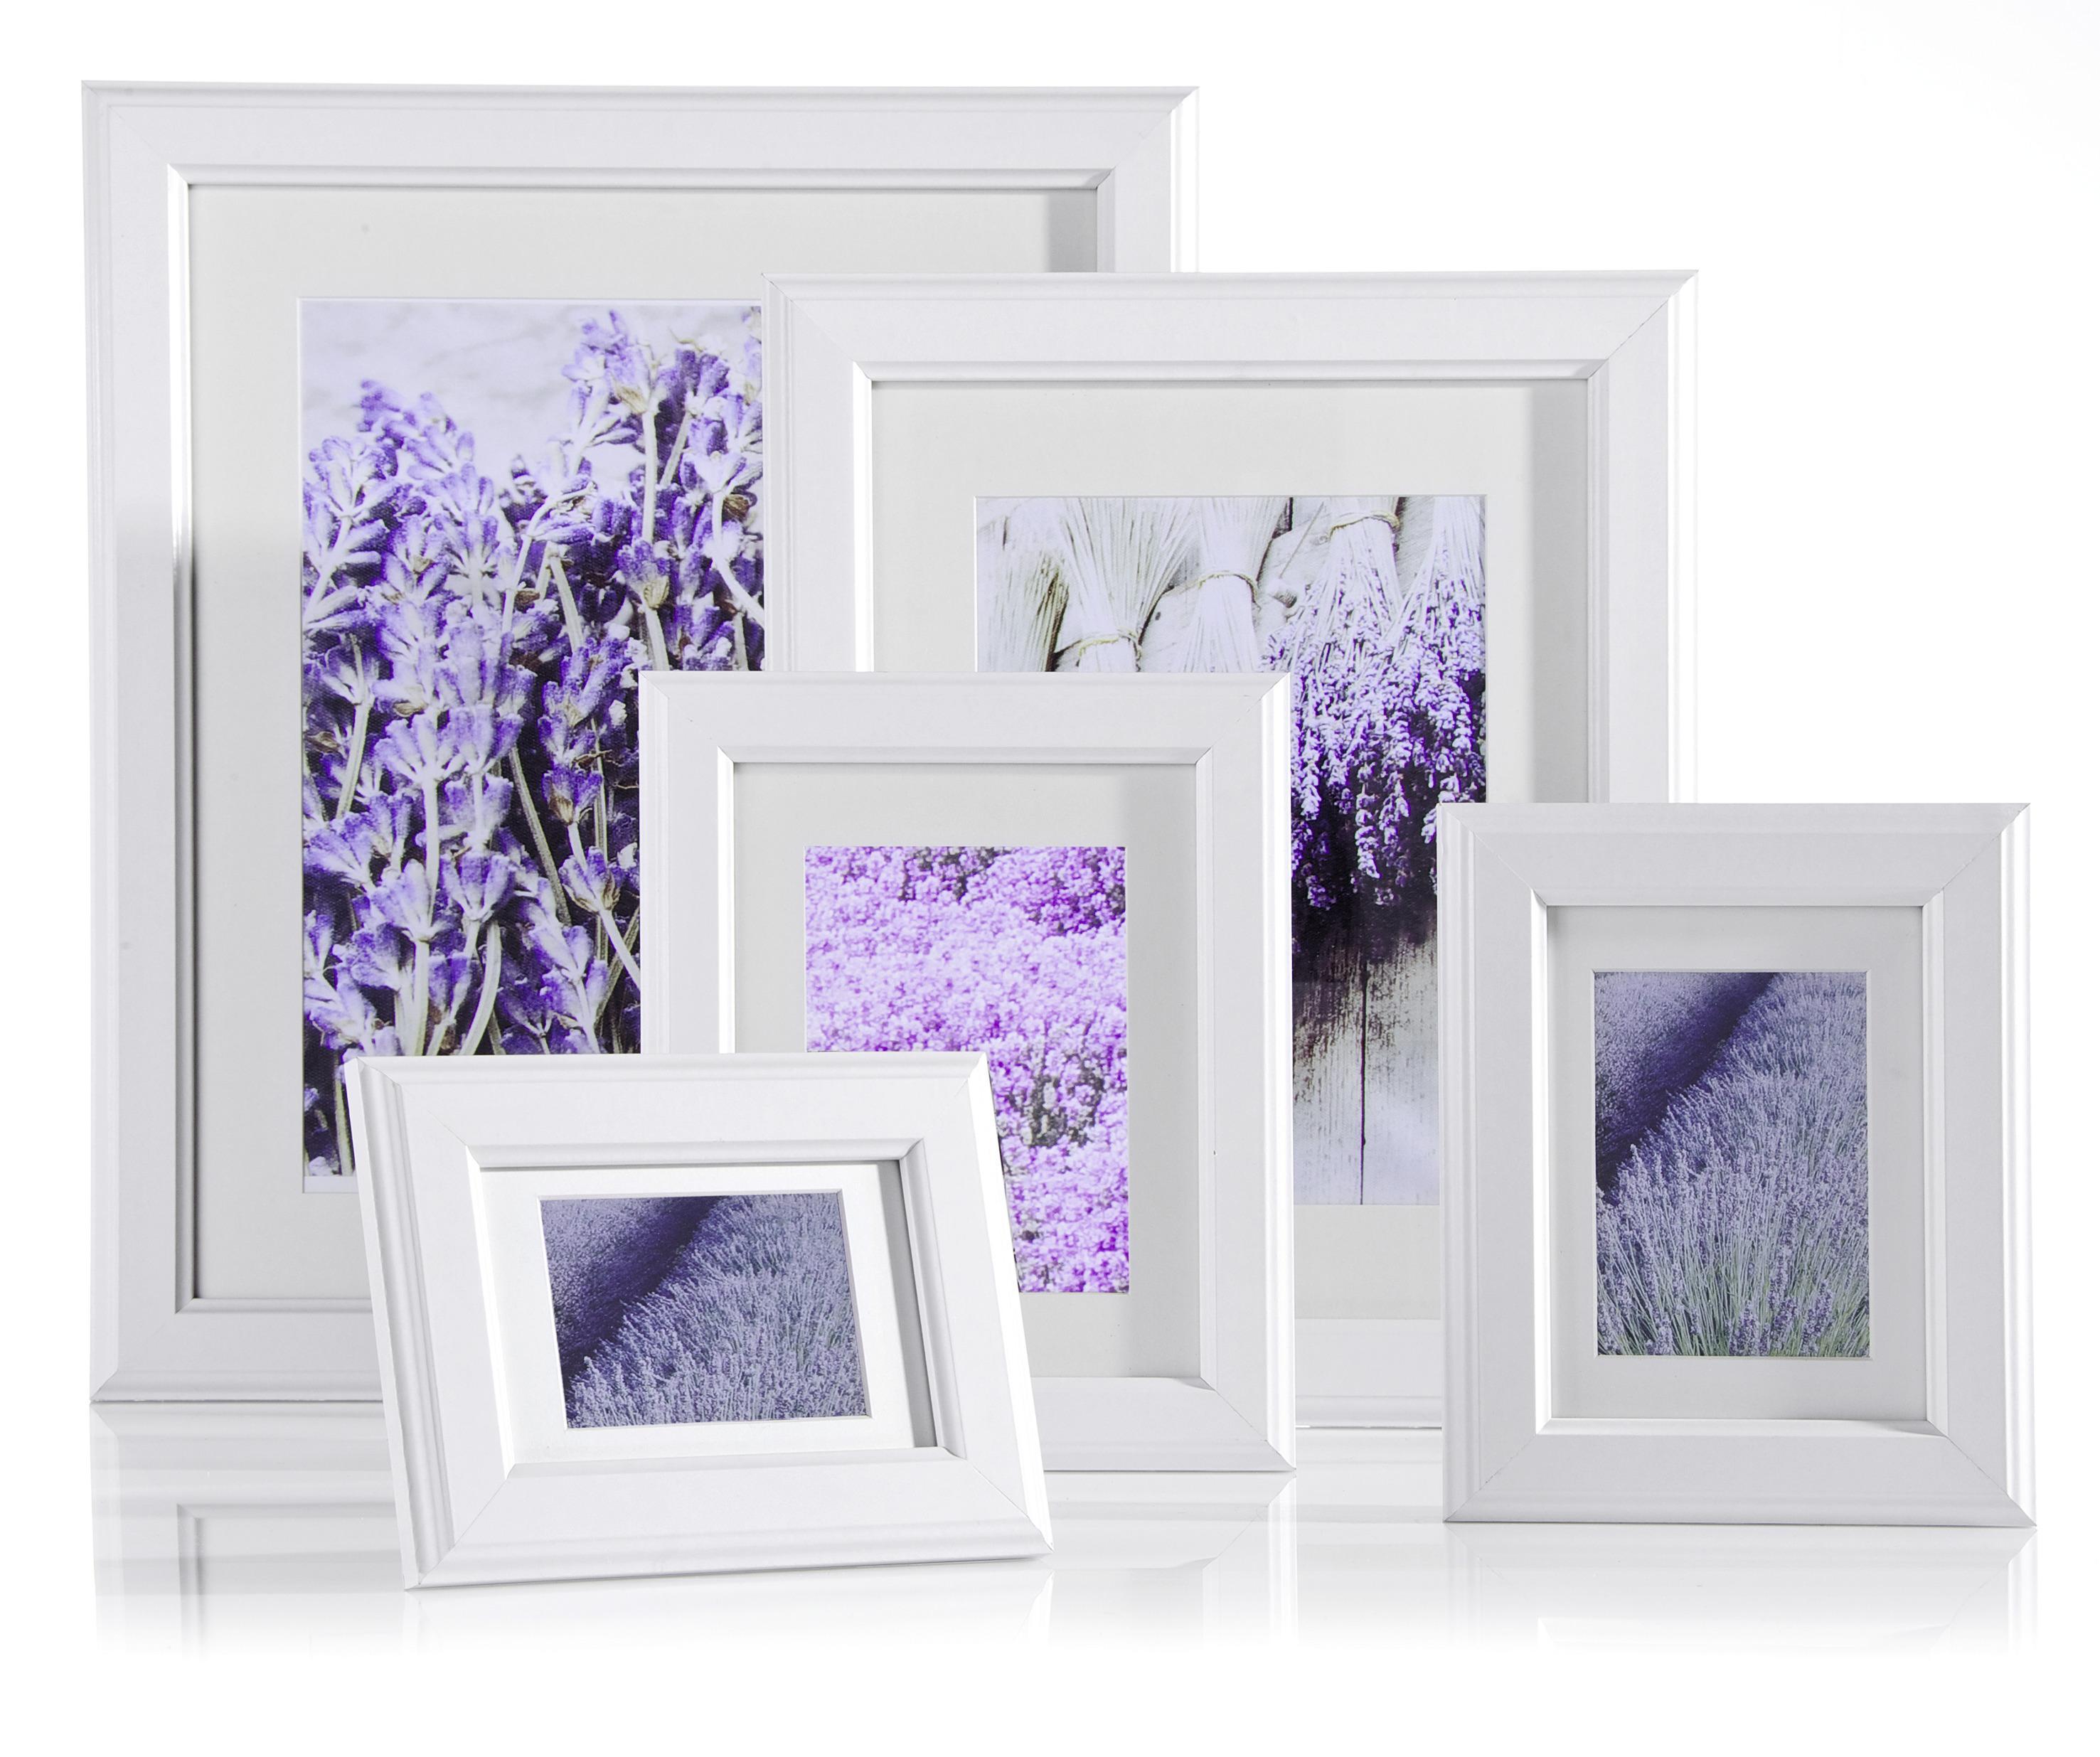 Rám Na Obrazy Provence 18x24 Cm - biela, Romantický / Vidiecky, drevo/sklo (18/24cm) - Modern Living